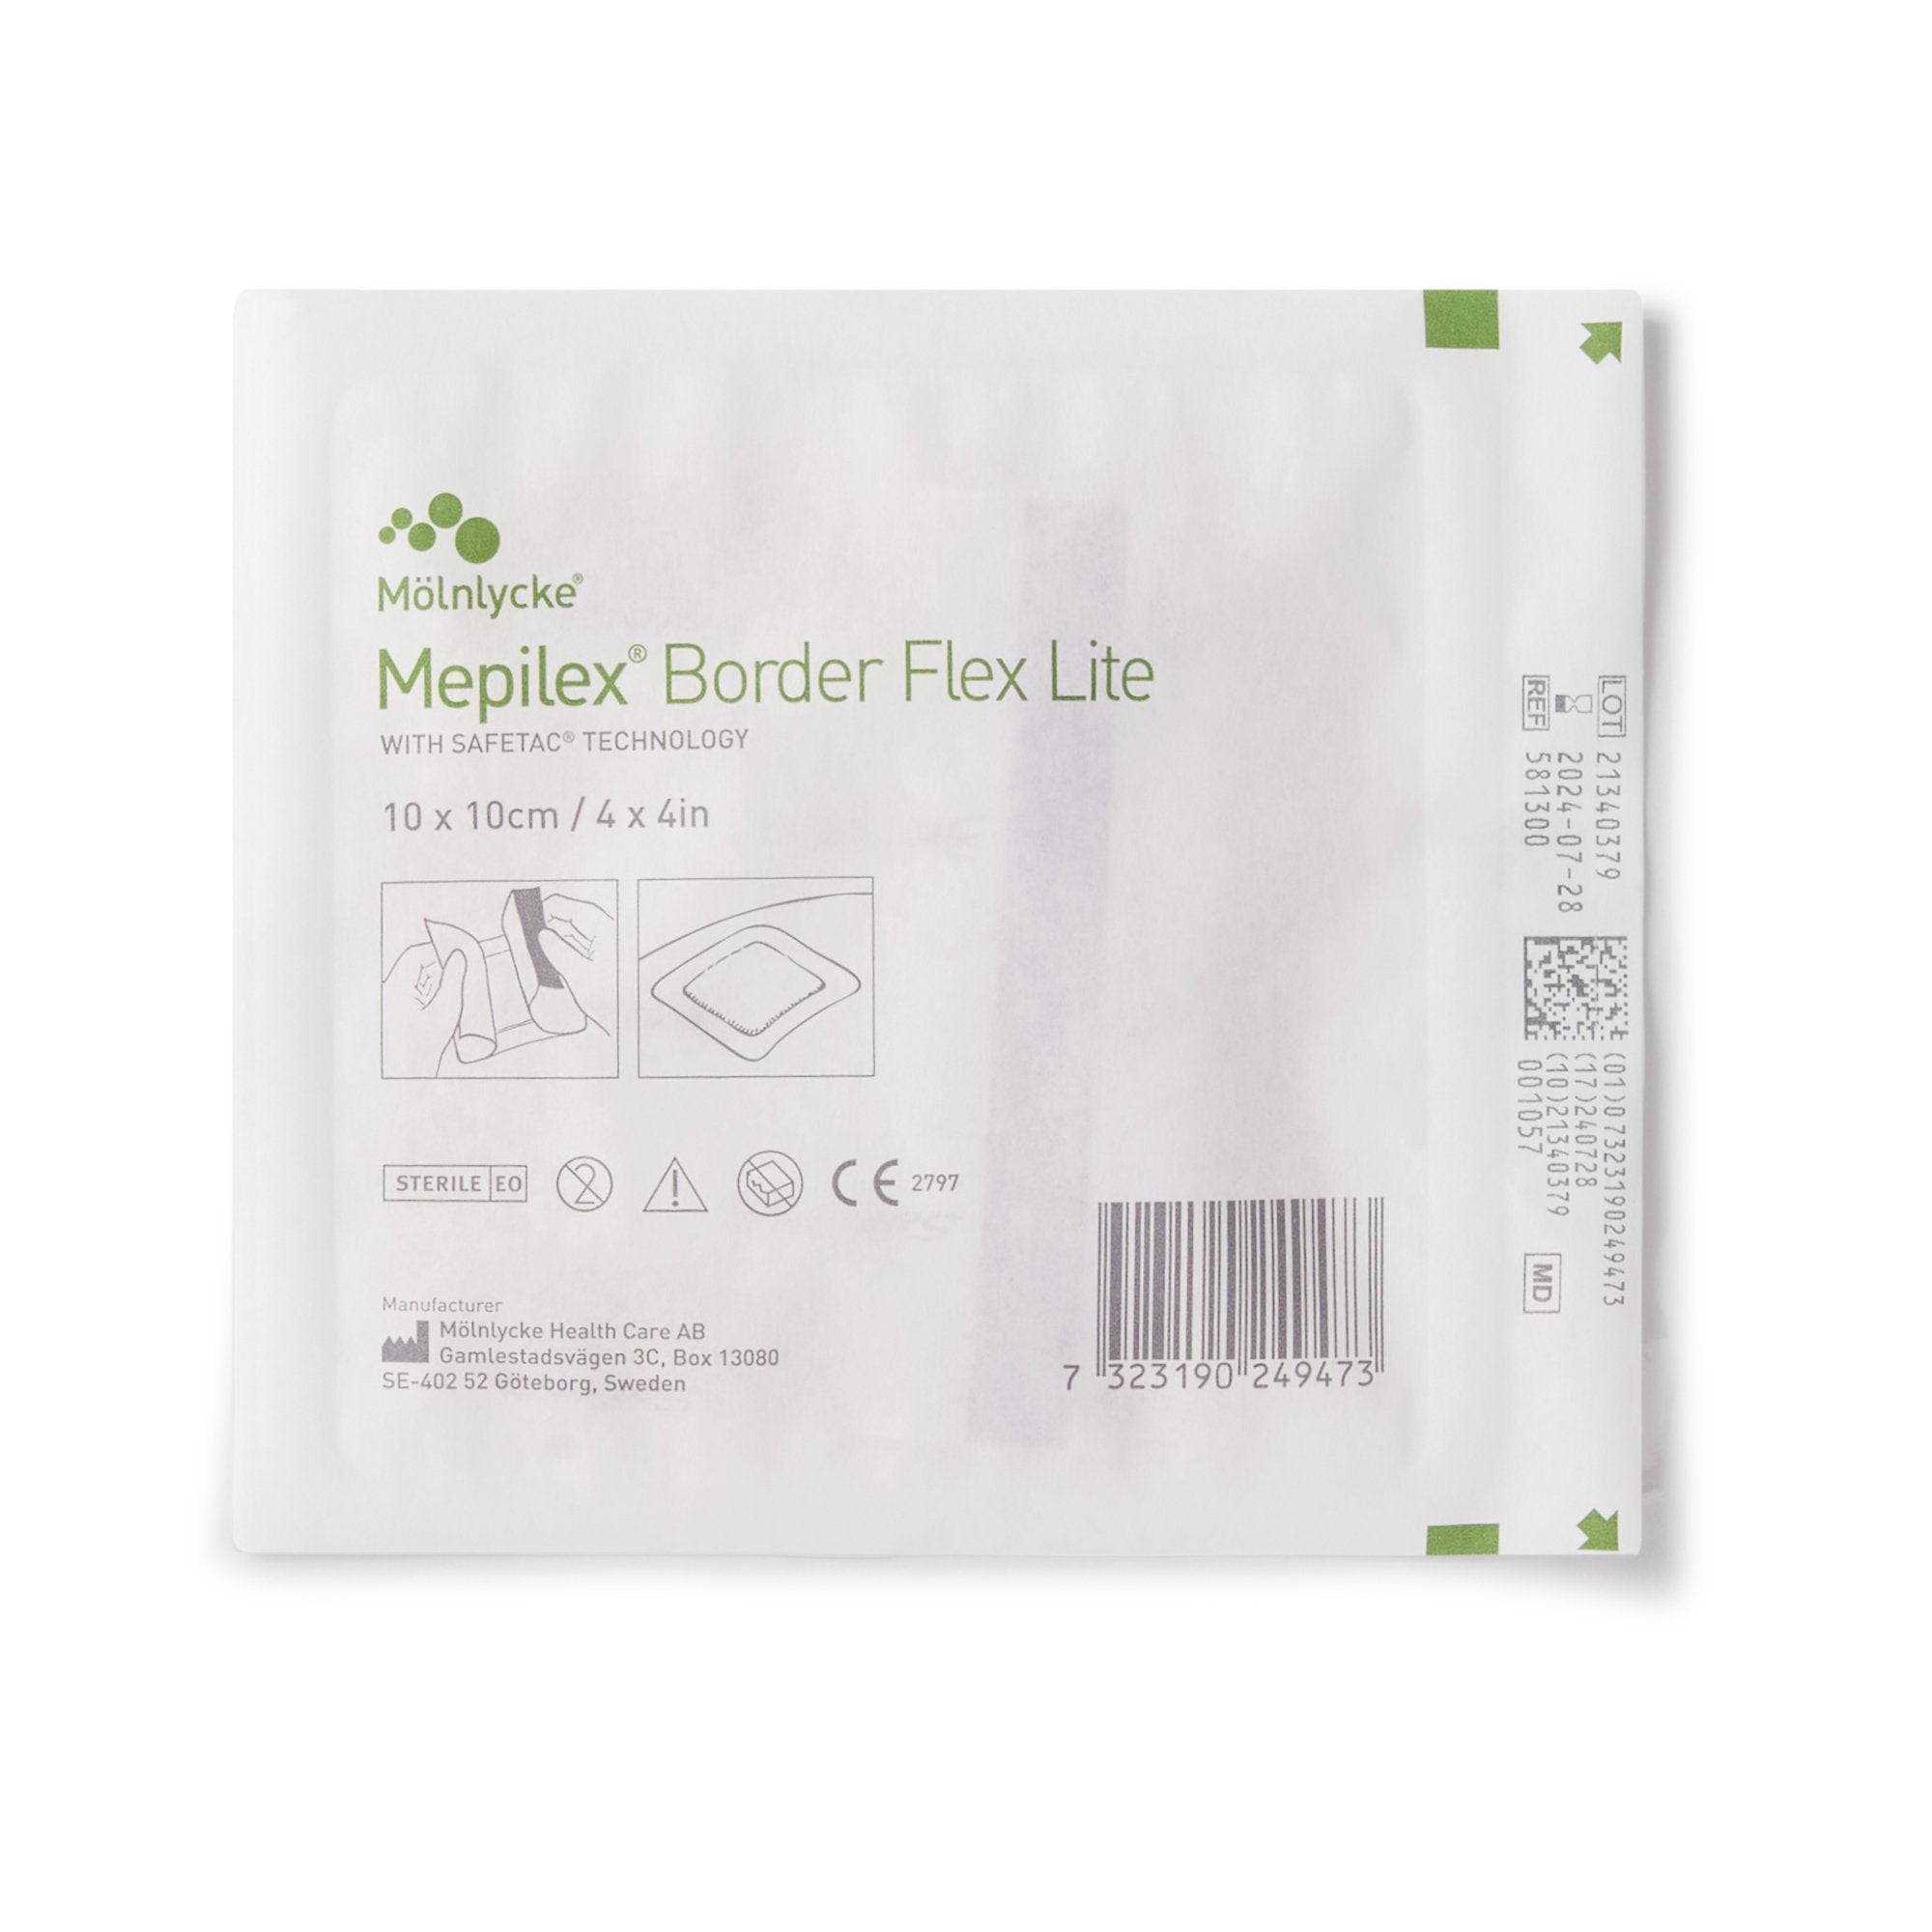 Mepilex® Border Flex Lite With Silicone Adhesive Square Sterile